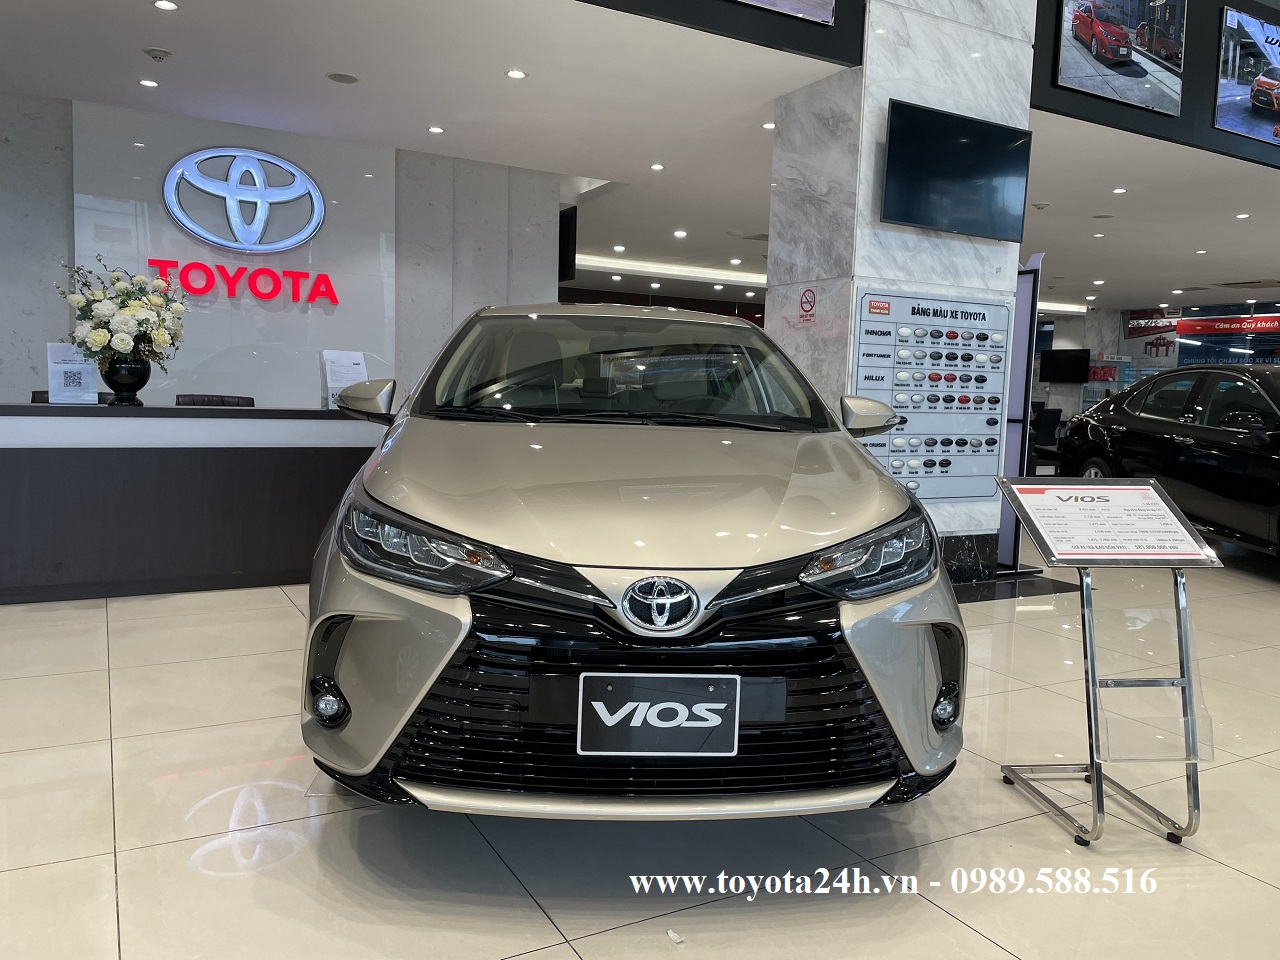 Toyota Vios 1.5G 2022 Màu Nâu Vàng Cát, Hình Ảnh Bảng Giá Xe Lăn Bánh Mới Nhất